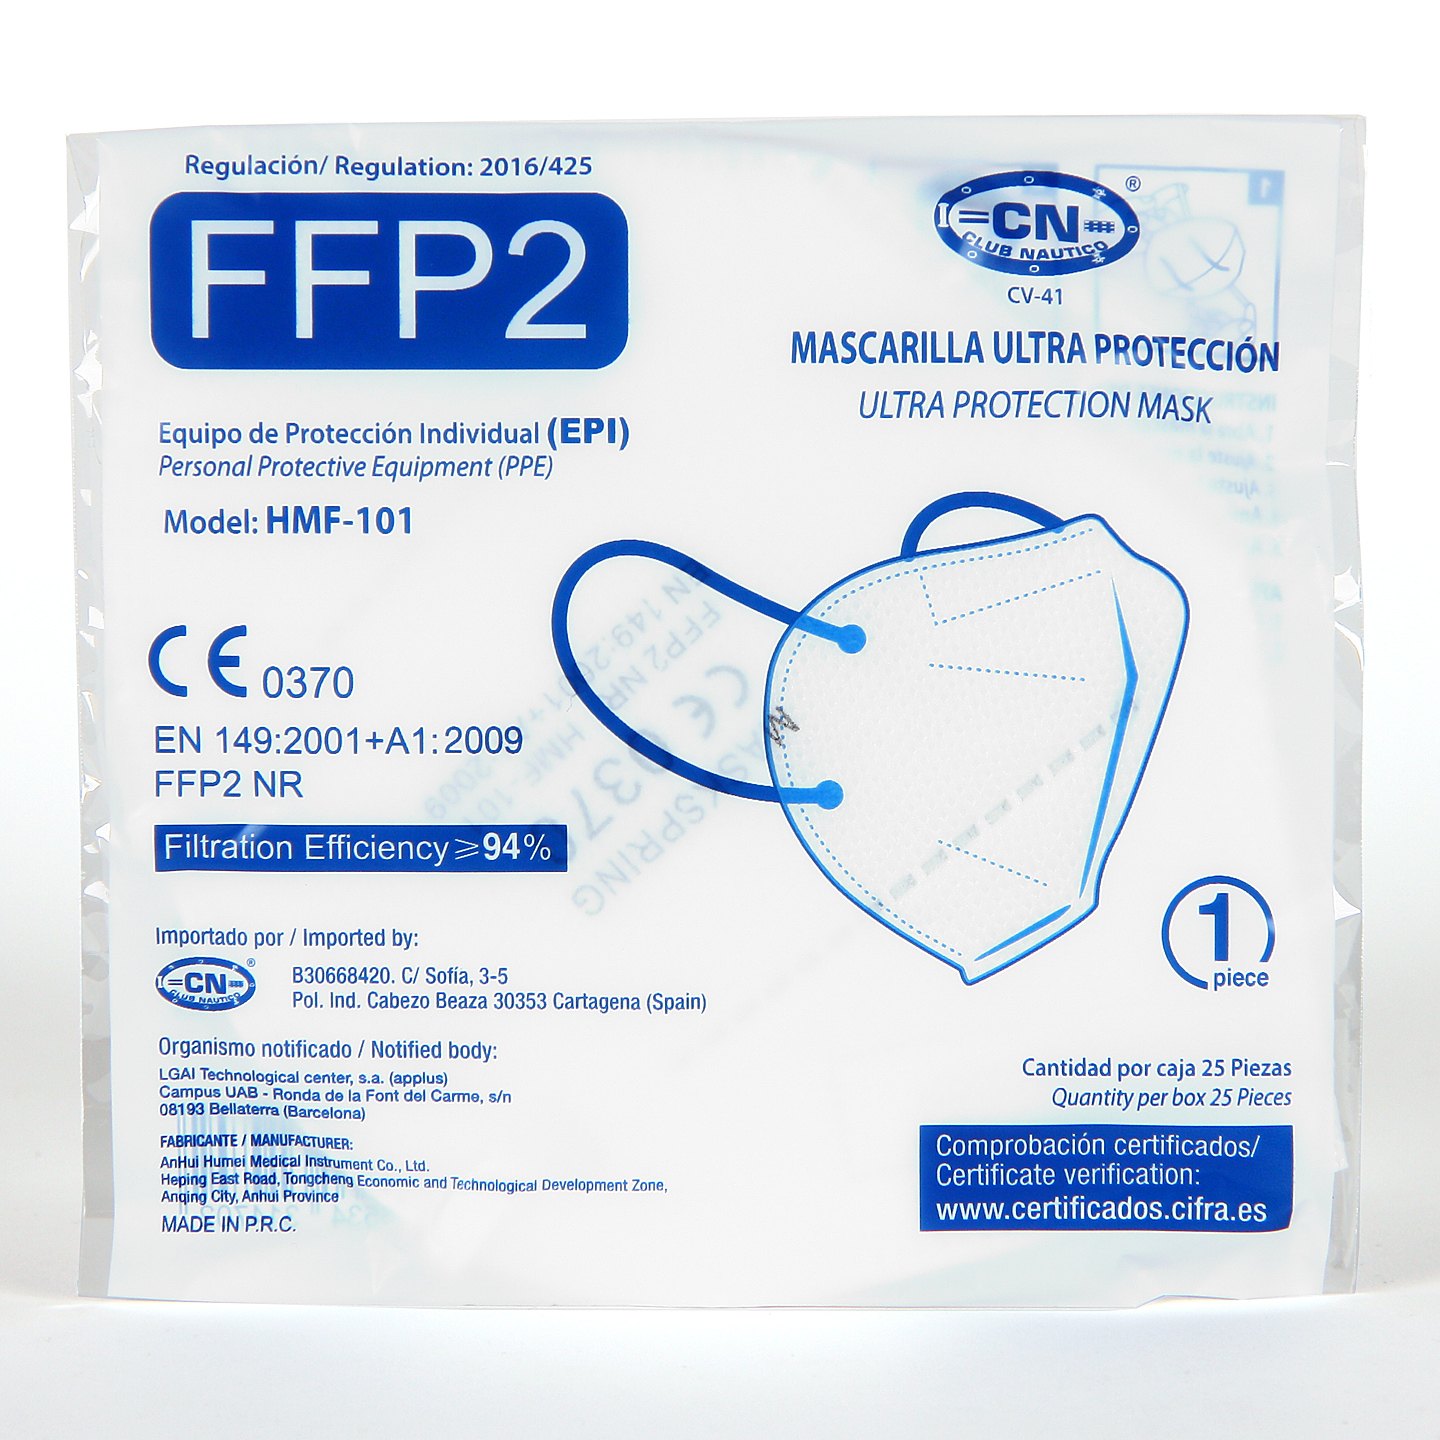 Mascarillas FFP2 de alta protección con certificado CE